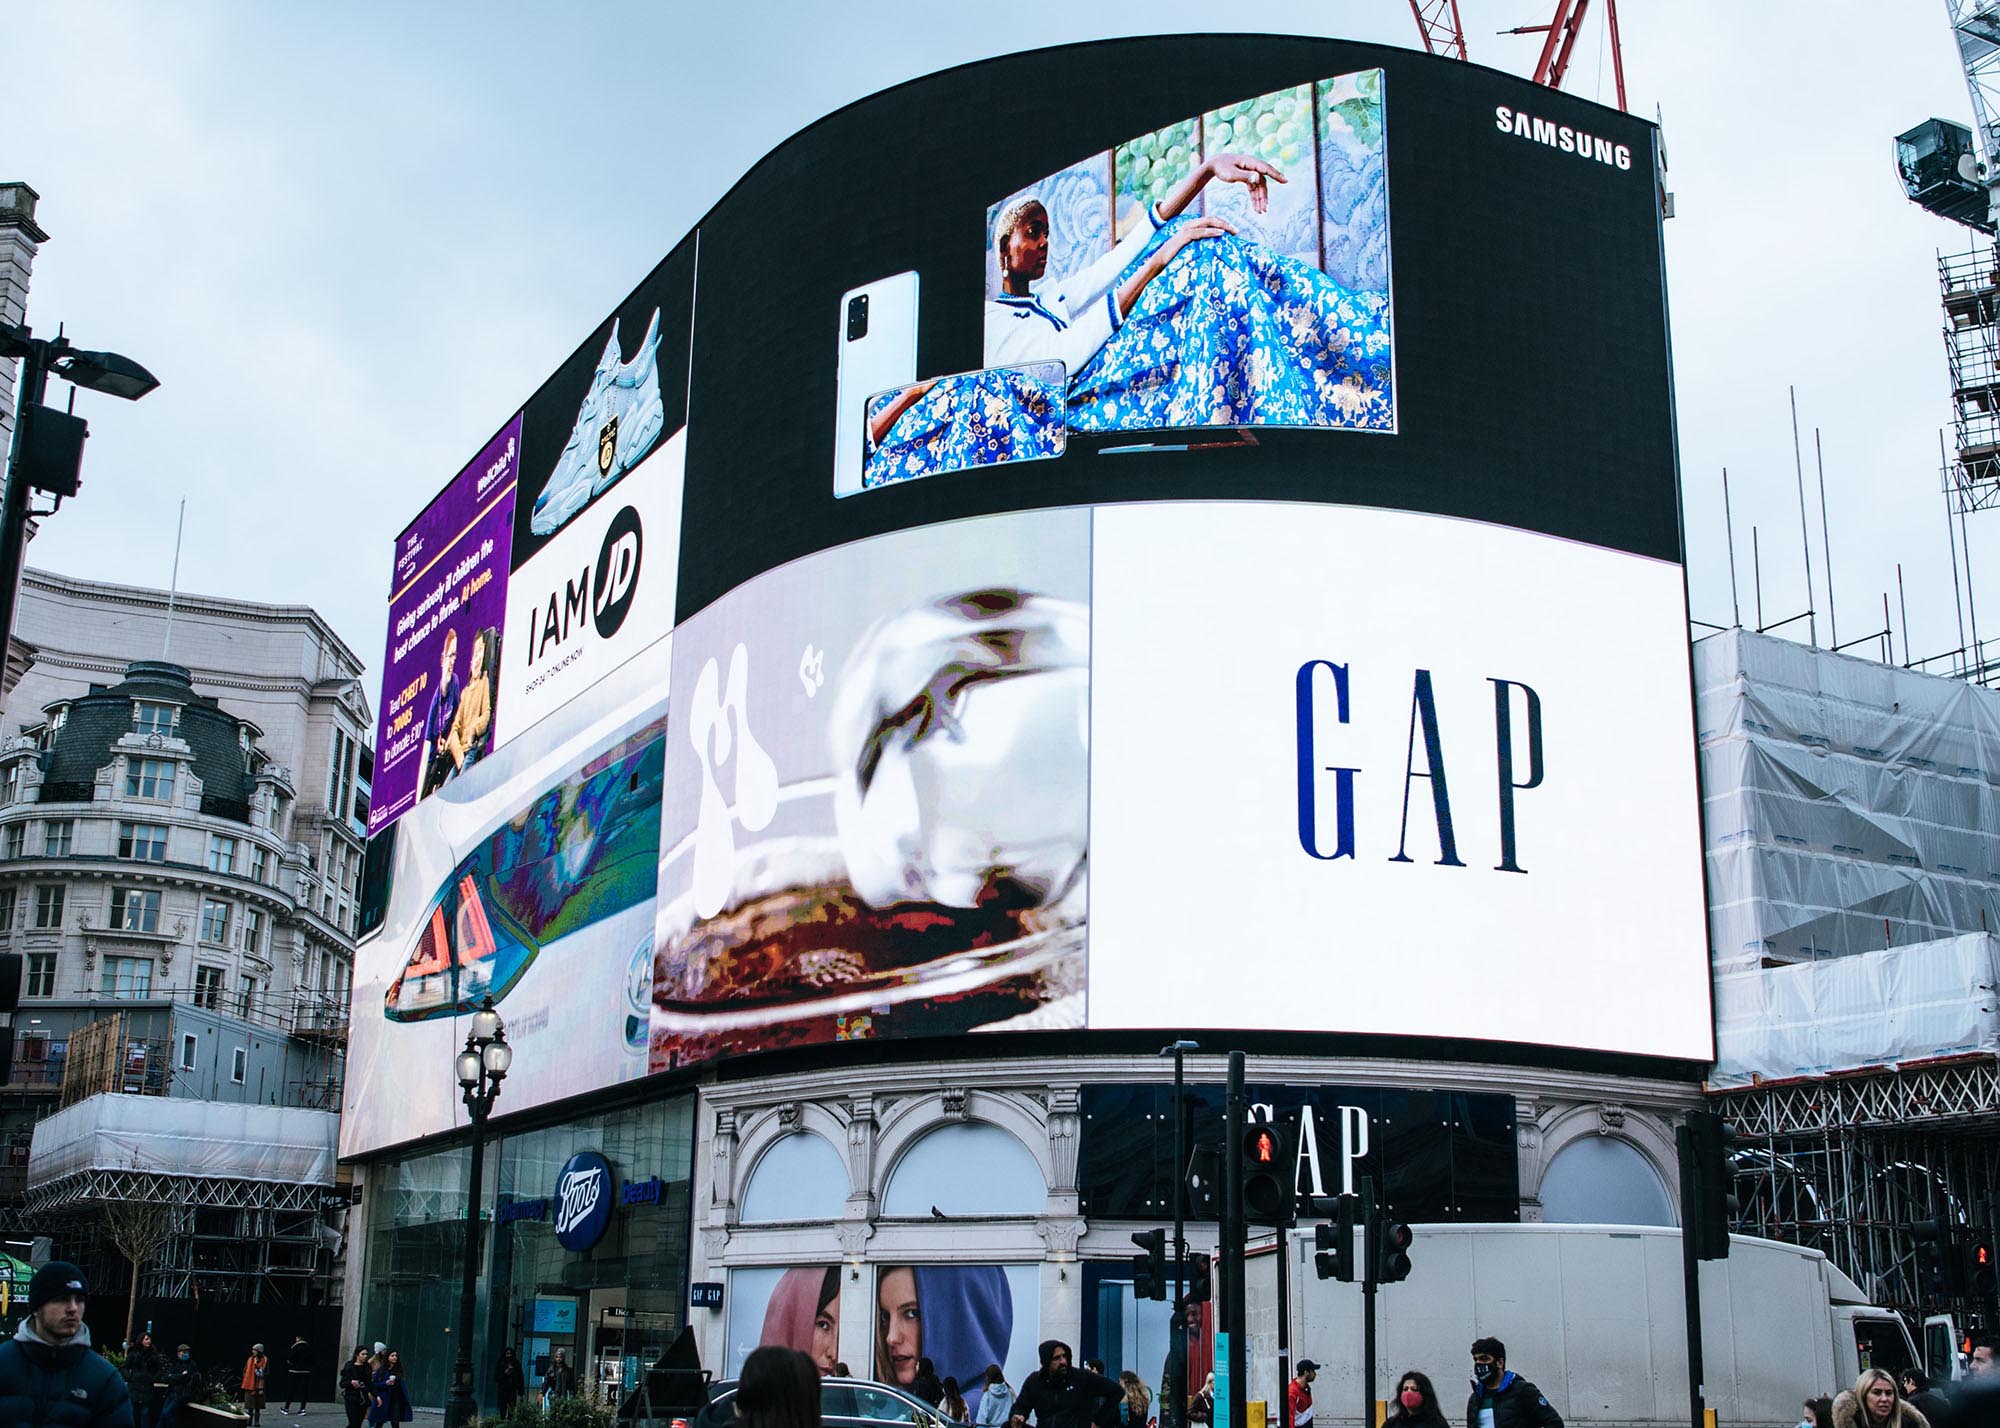 Digital billboard advertising